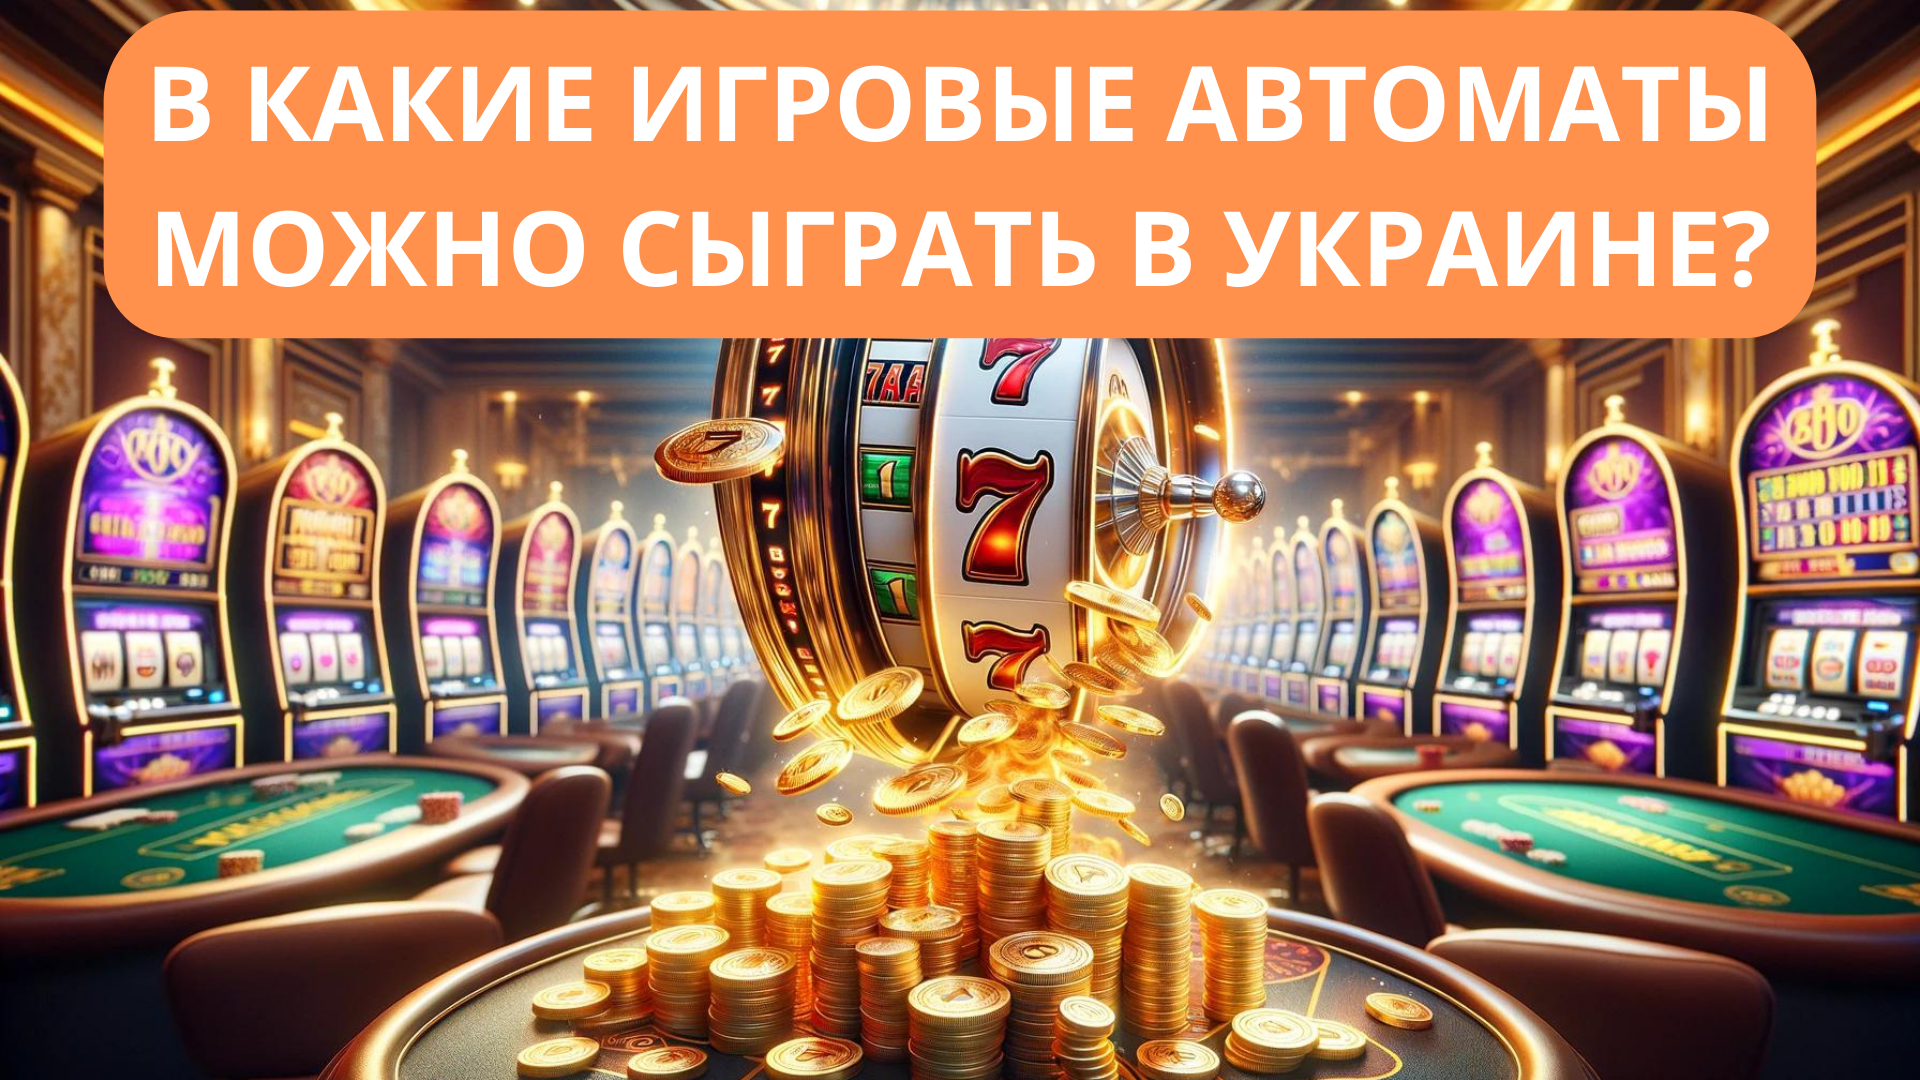 В какие игровые автоматы на деньги можно играть в Украине?